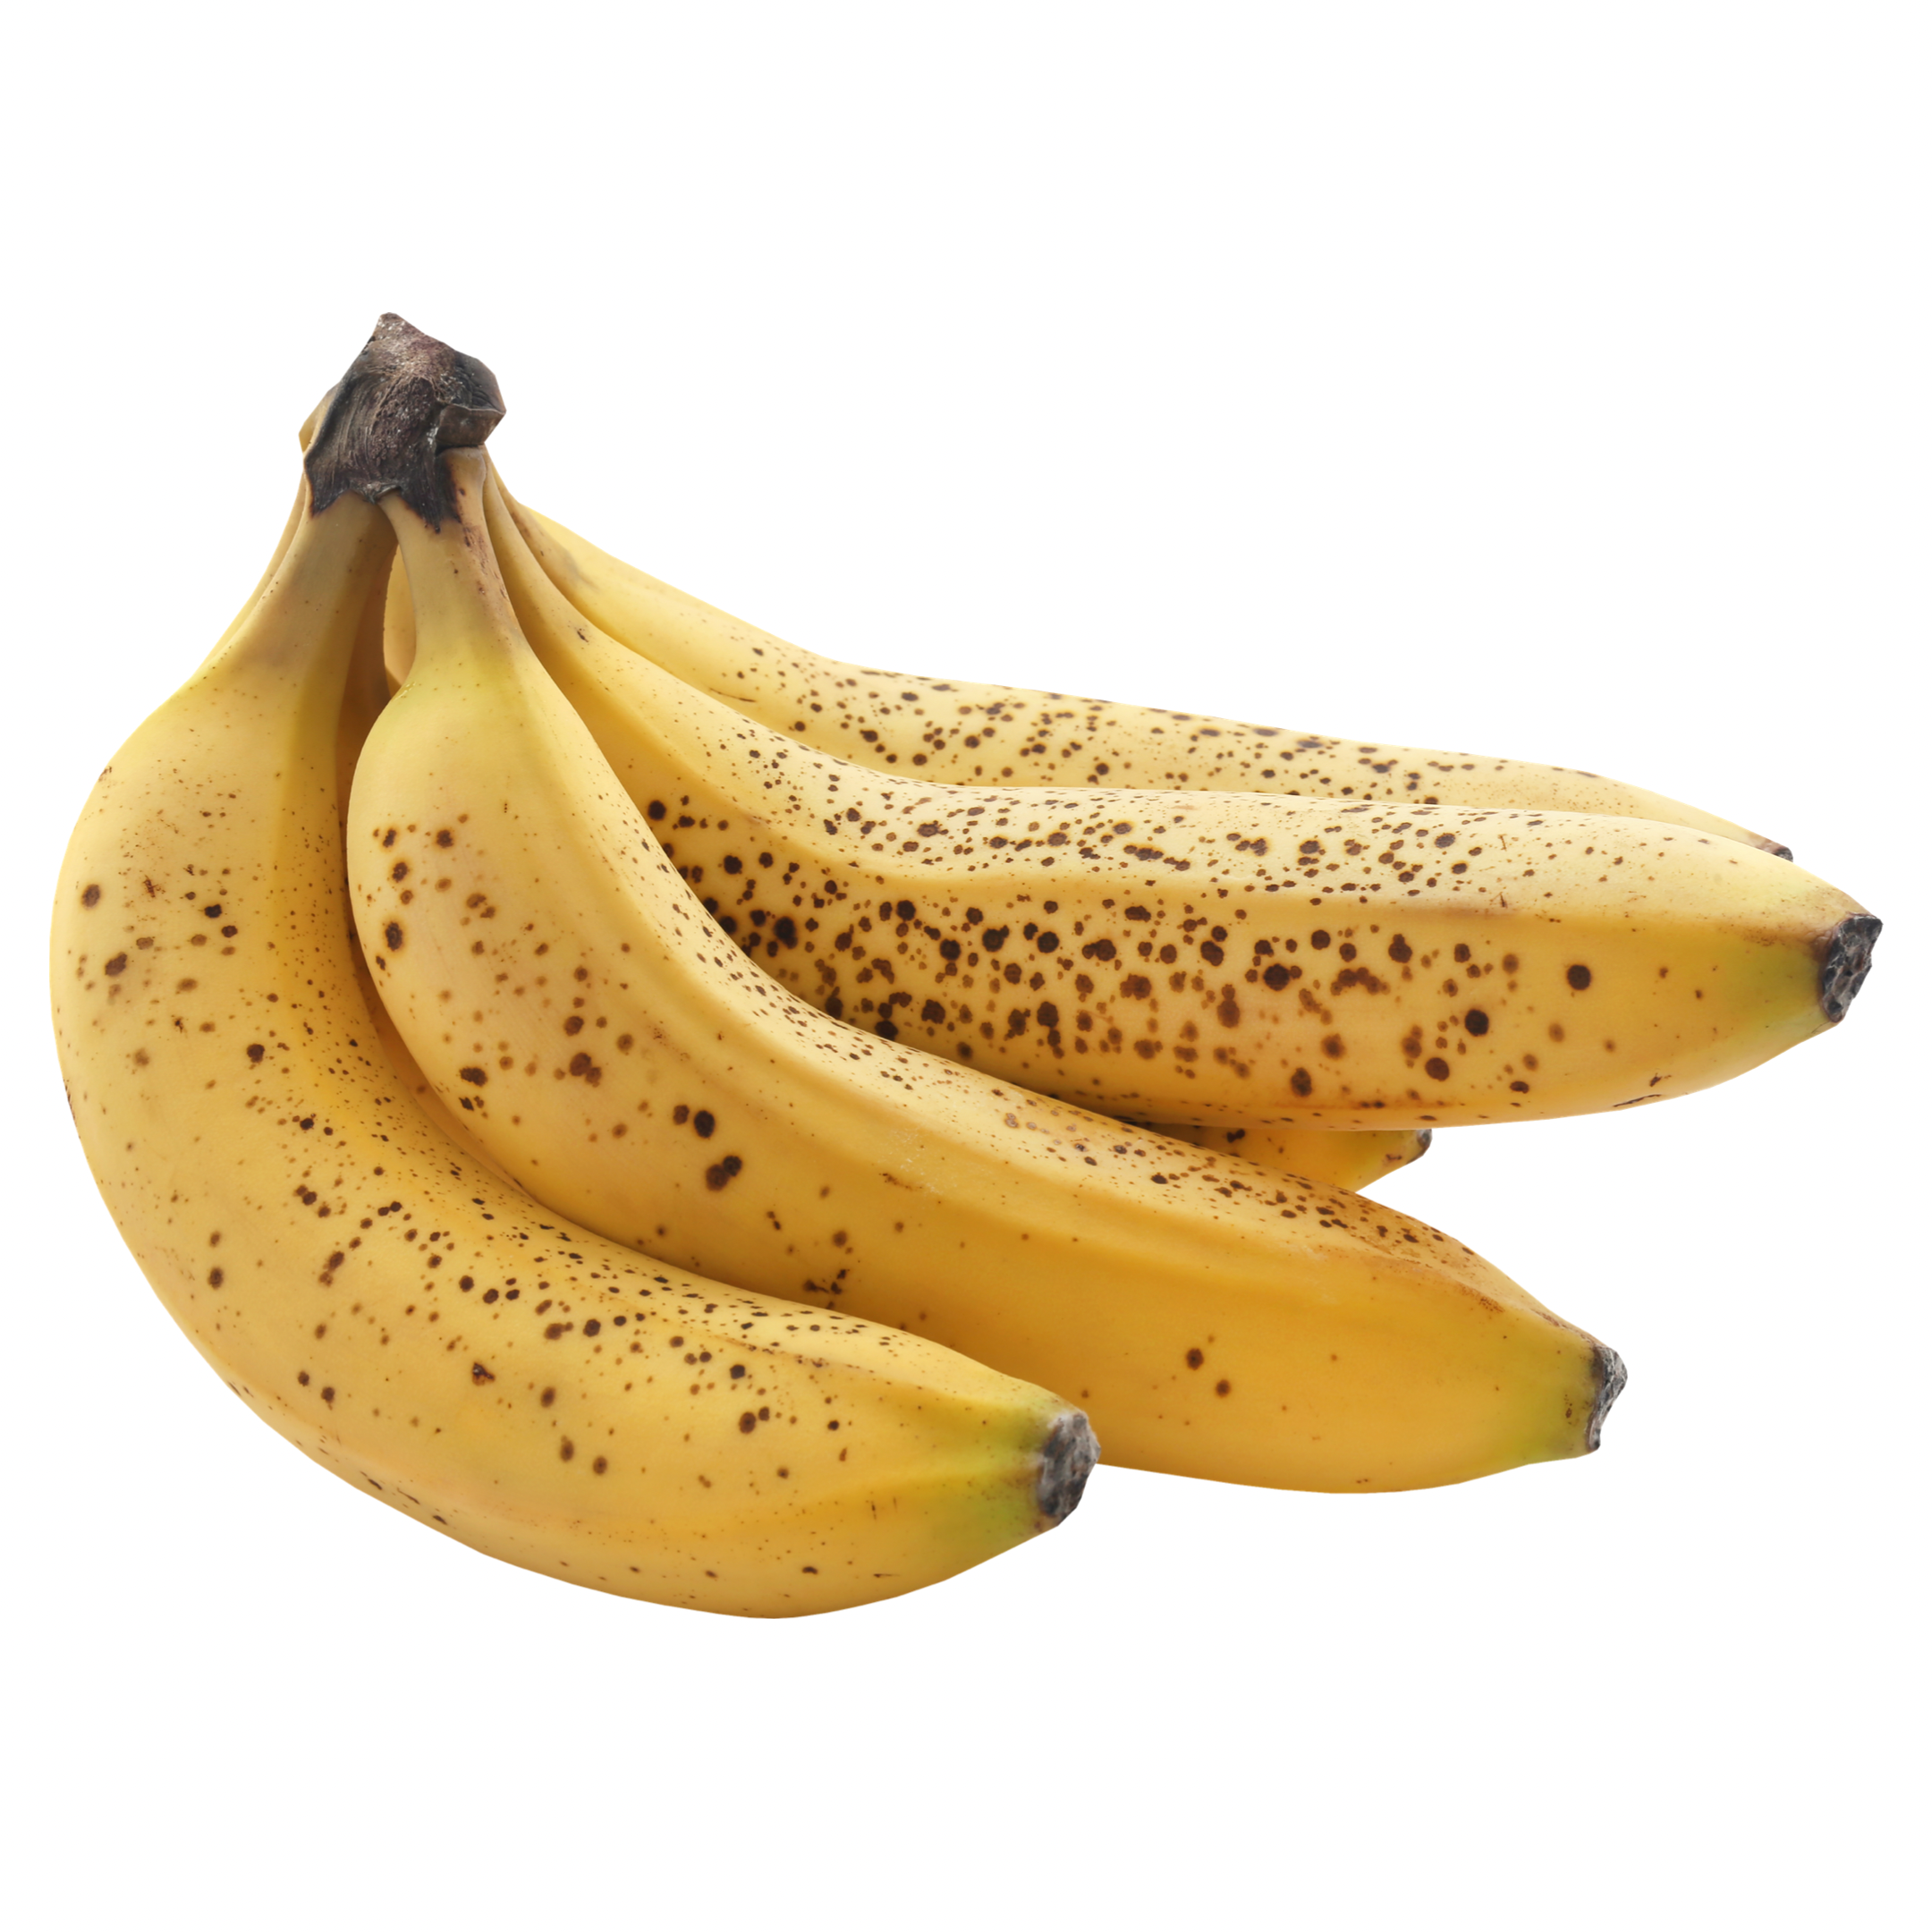 Banano orgánico x racimo